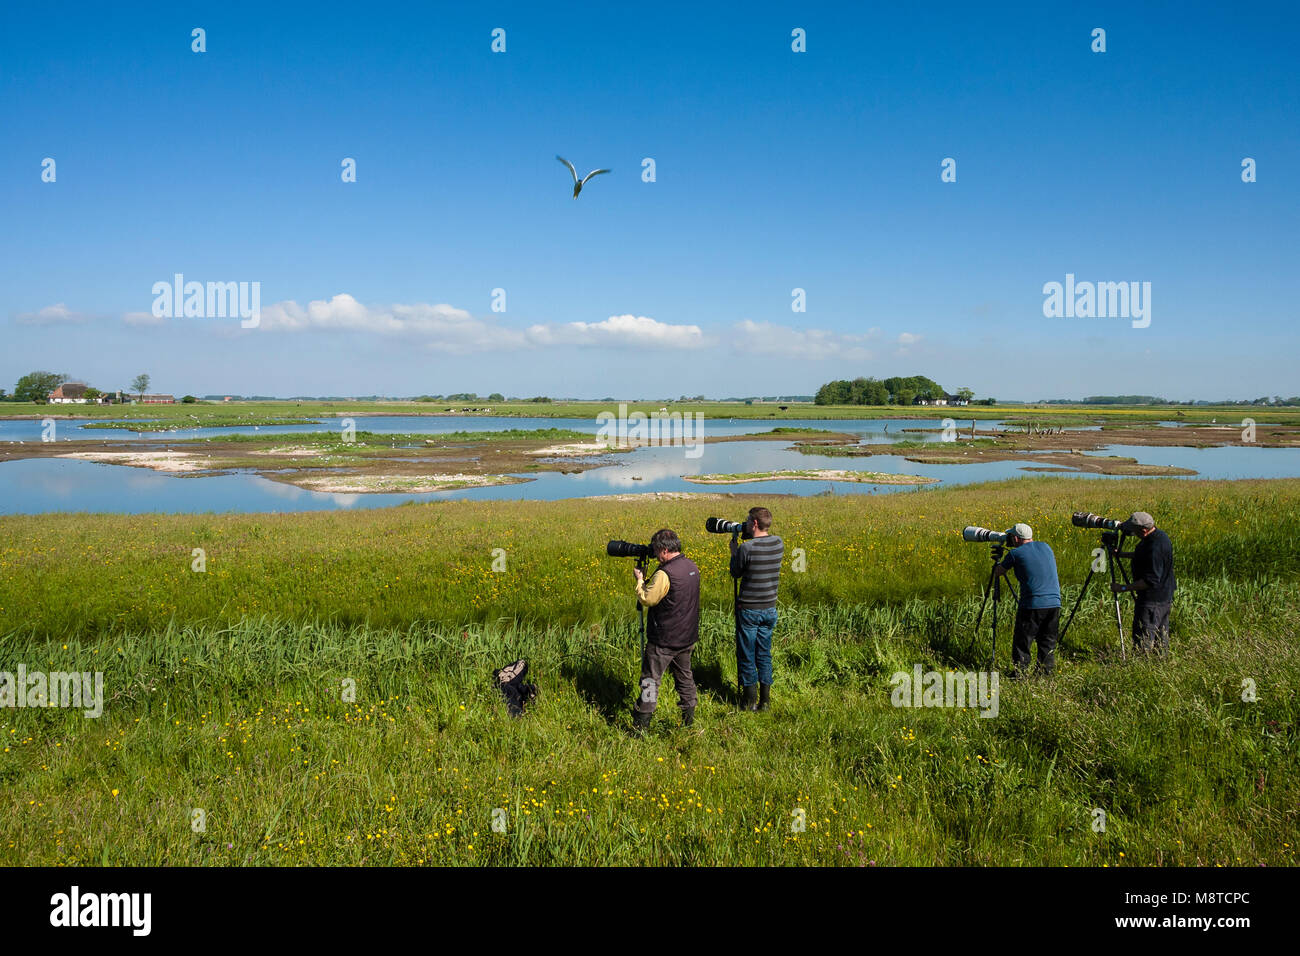 Vogelfotografen in actie bij waterplas met vogels; Bird Photographers in action at lake with birds Stock Photo